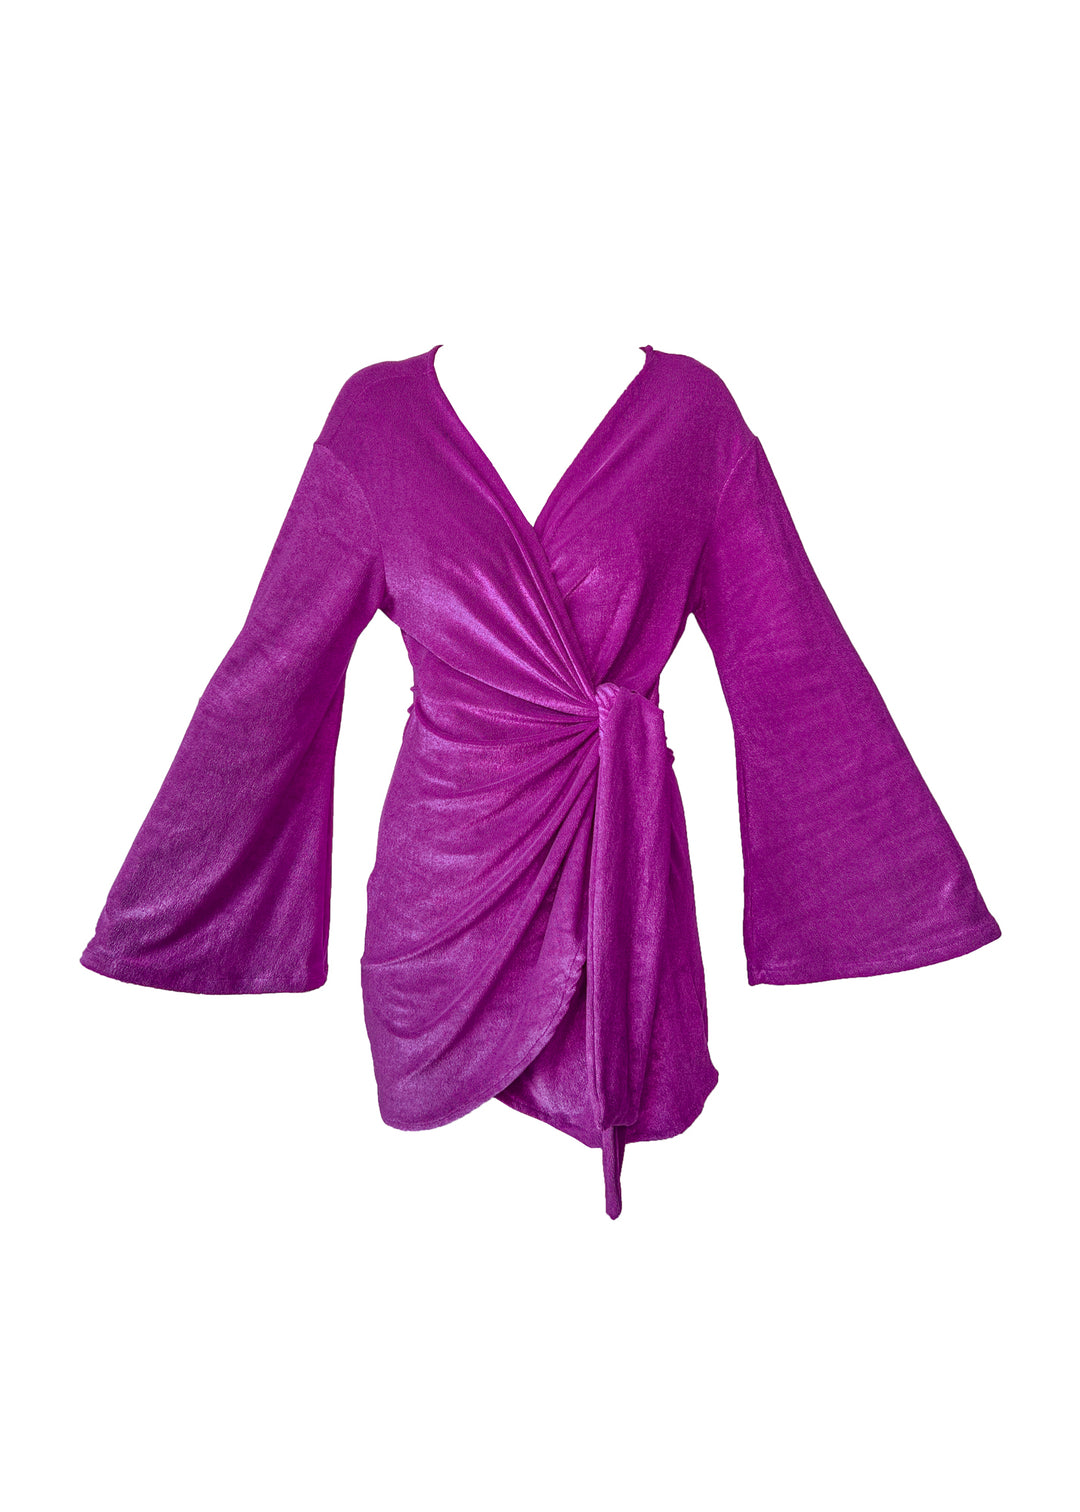 Vestido Celina - Atoalhado Magic Purple